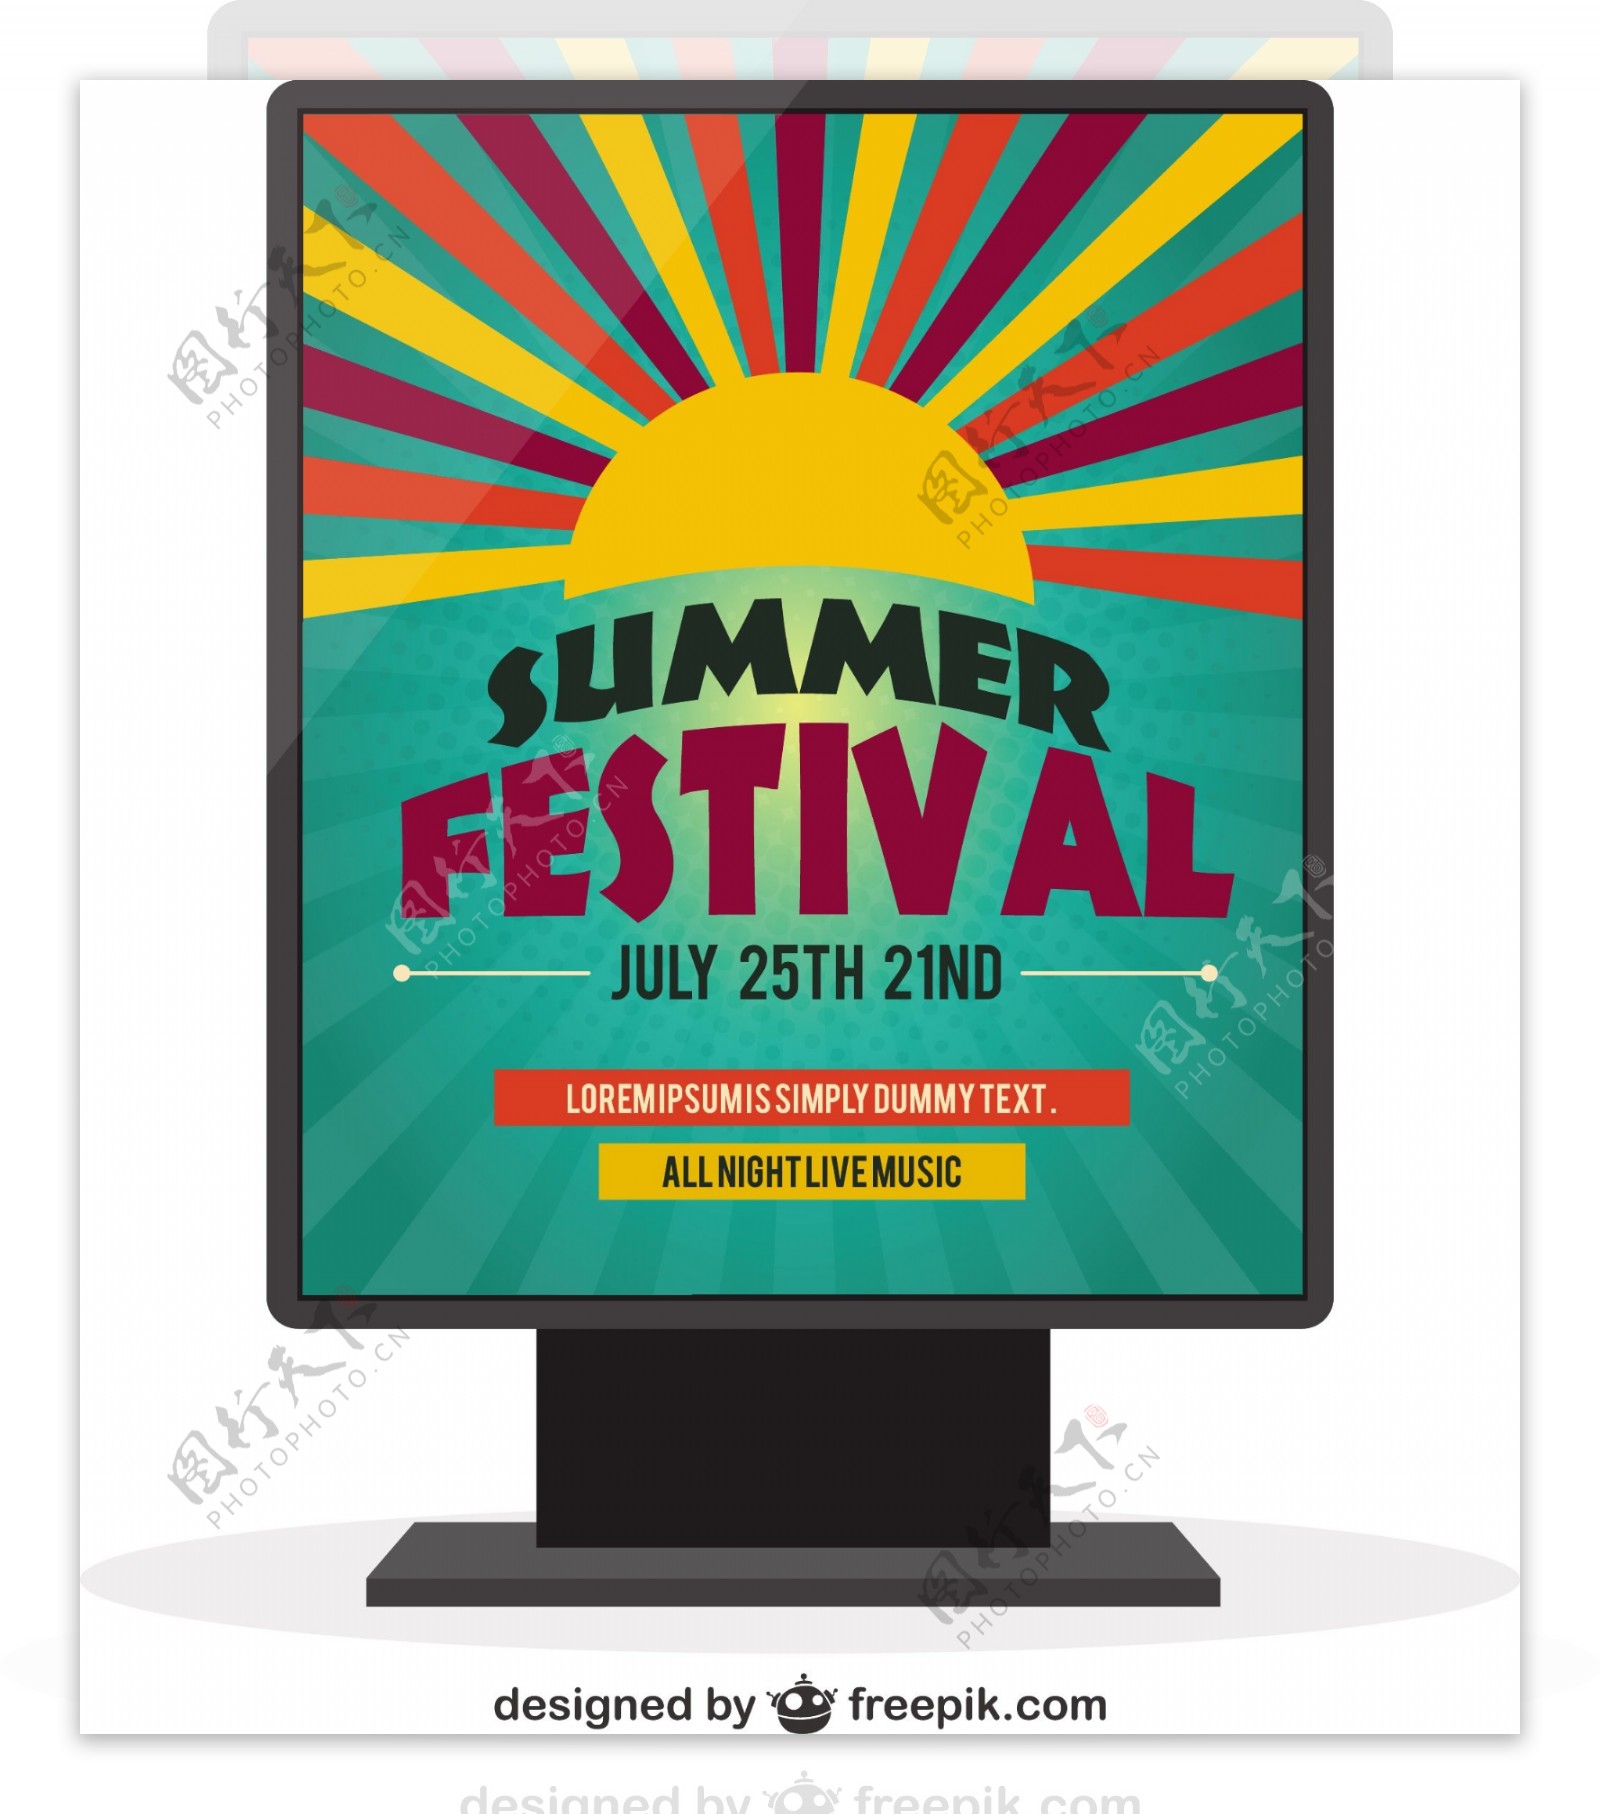 夏季音乐节海报